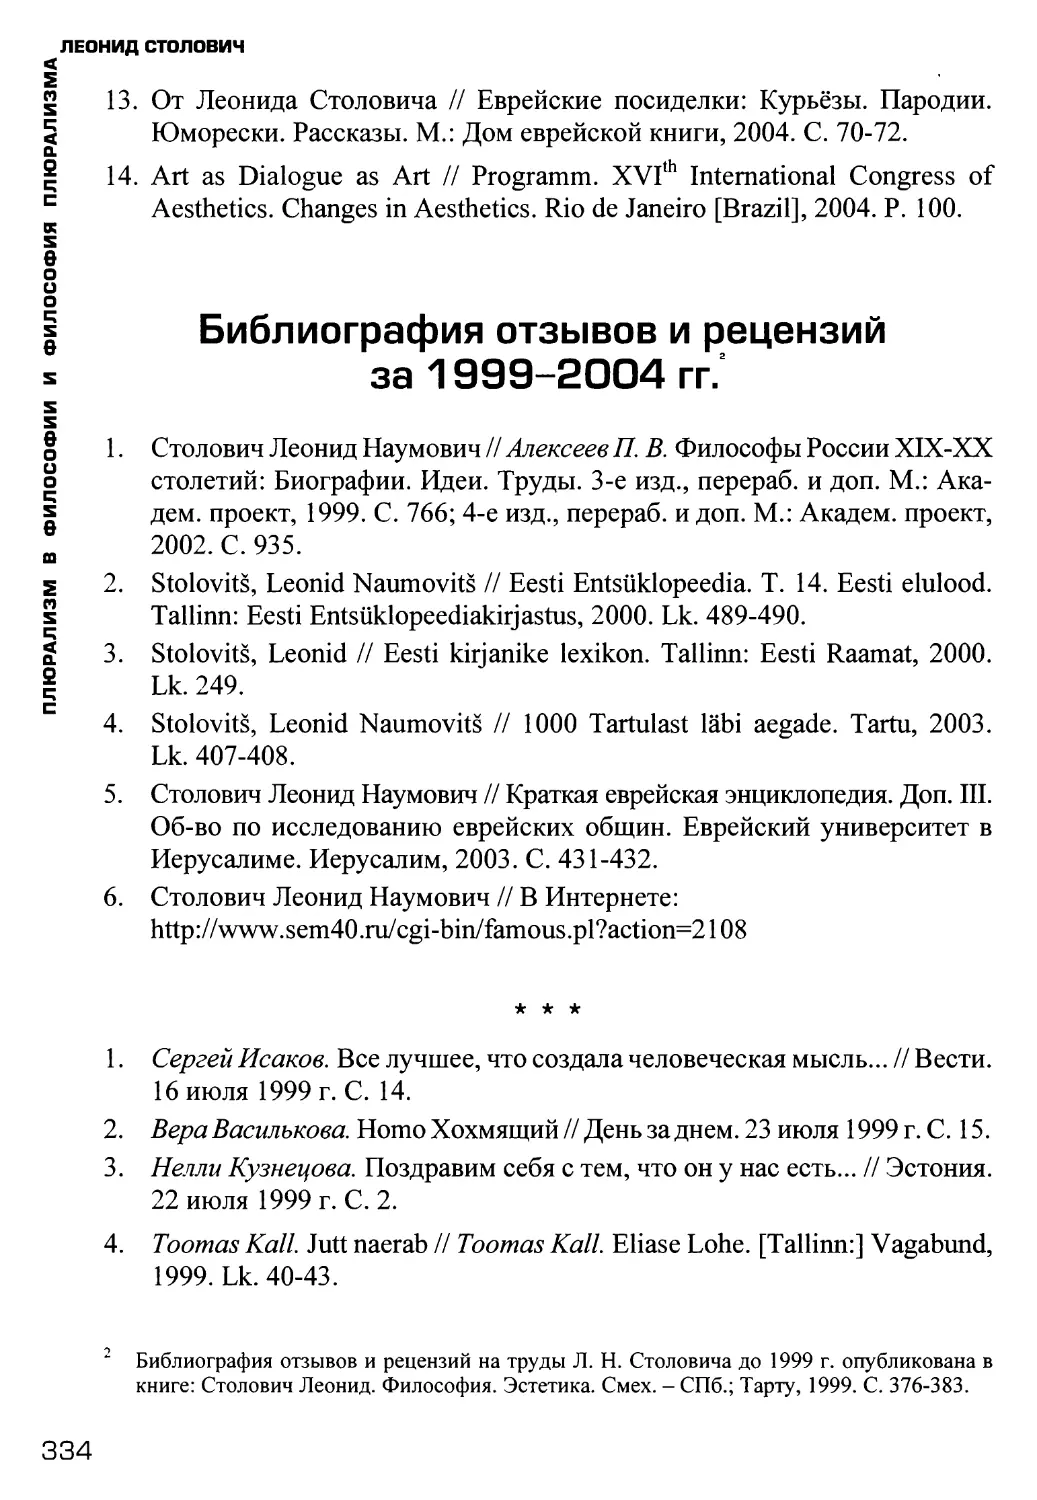 Библиография отзывов и рецензий за 1999-2004